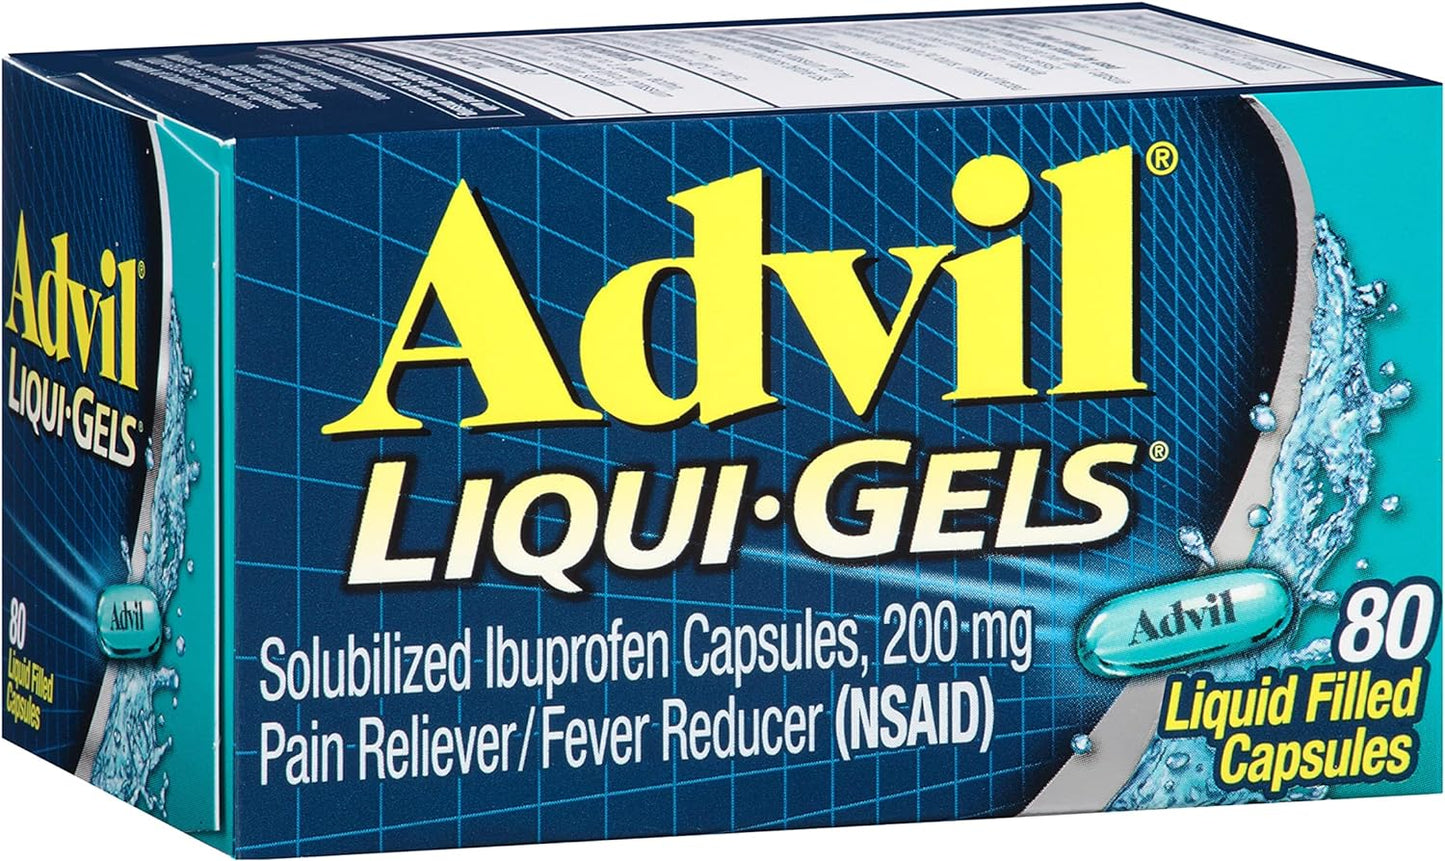 Advil Ibuprofen pain reliever 80 Liquid-Filled Gels